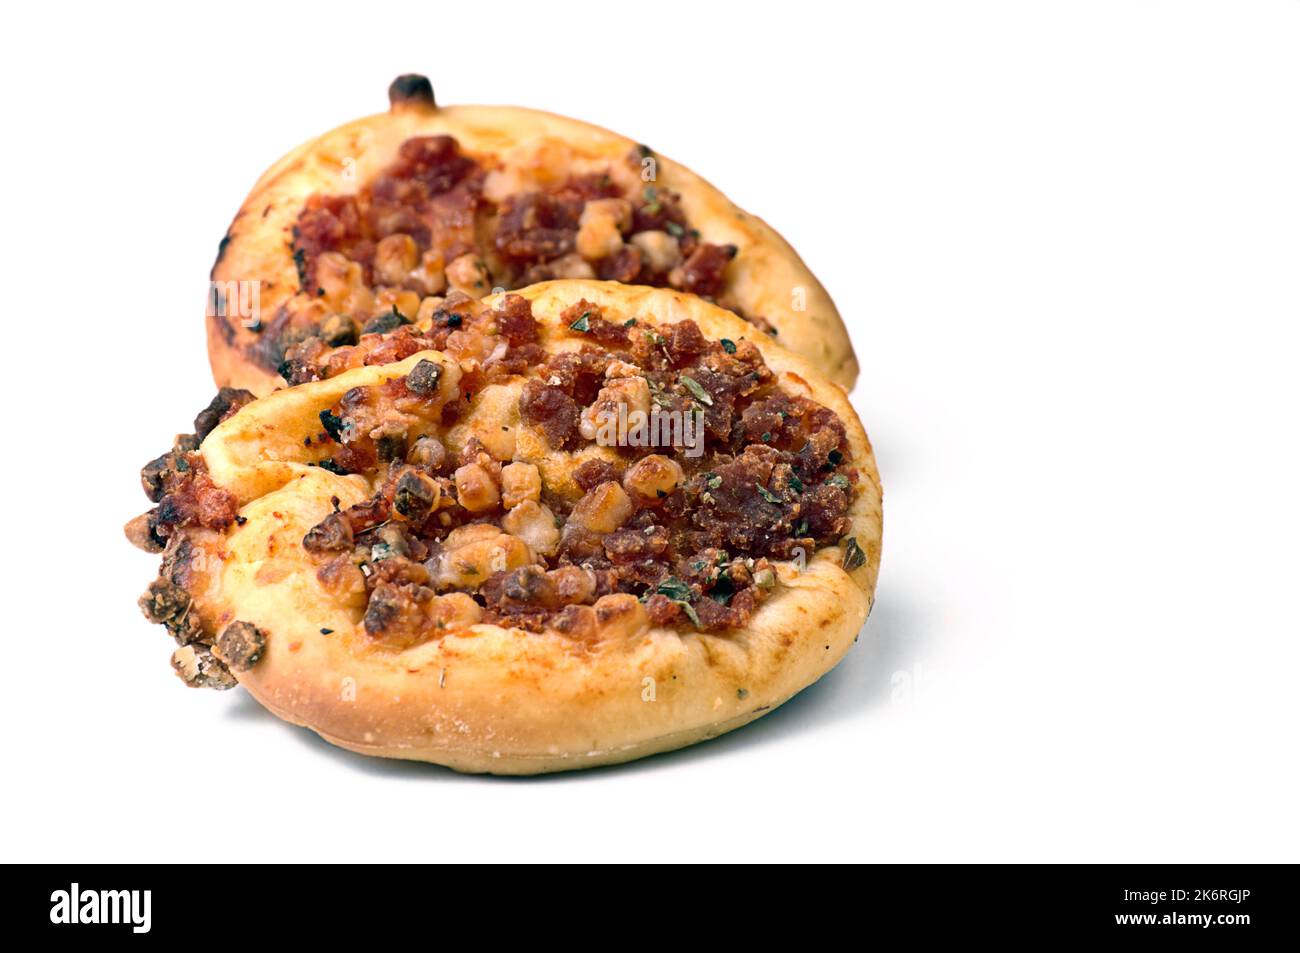 Piccola pizza appena cotta con ingredienti biologici e molto gustosa. Foto Stock